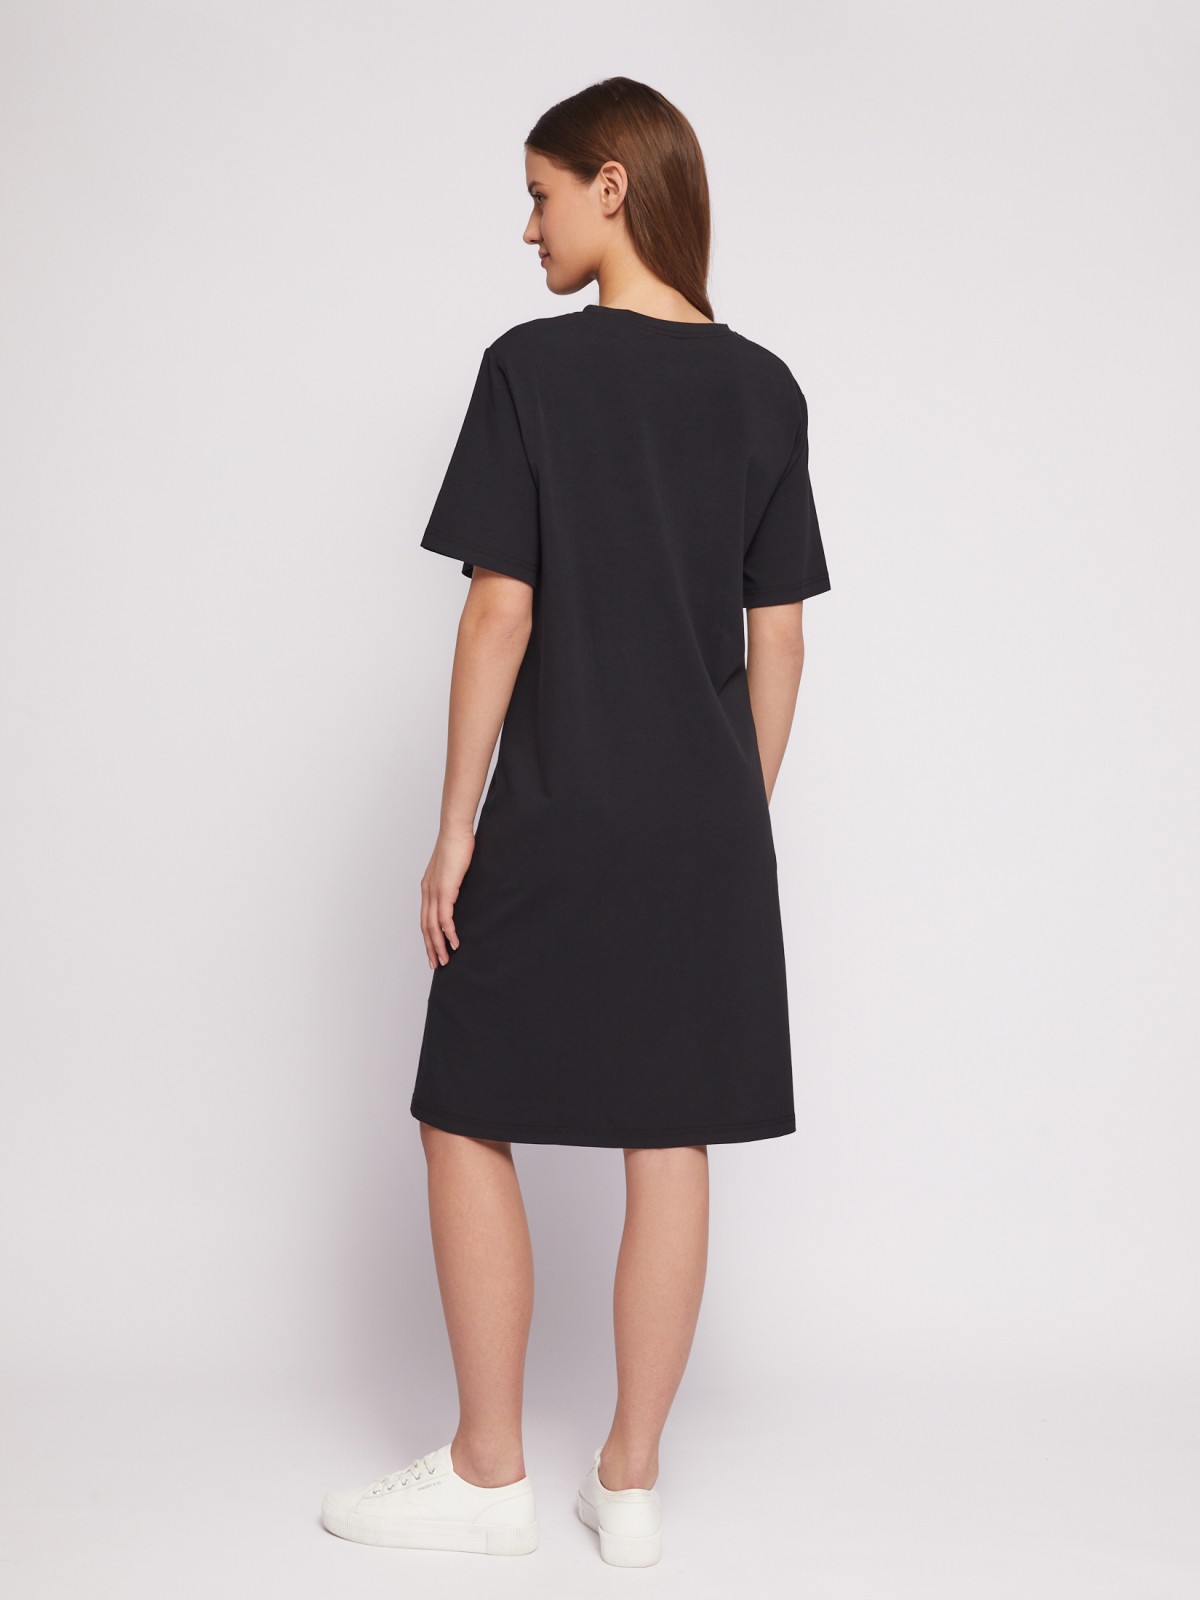 Платье-футболка из хлопка с завязками на талии zolla 024218139021, цвет черный, размер S - фото 6